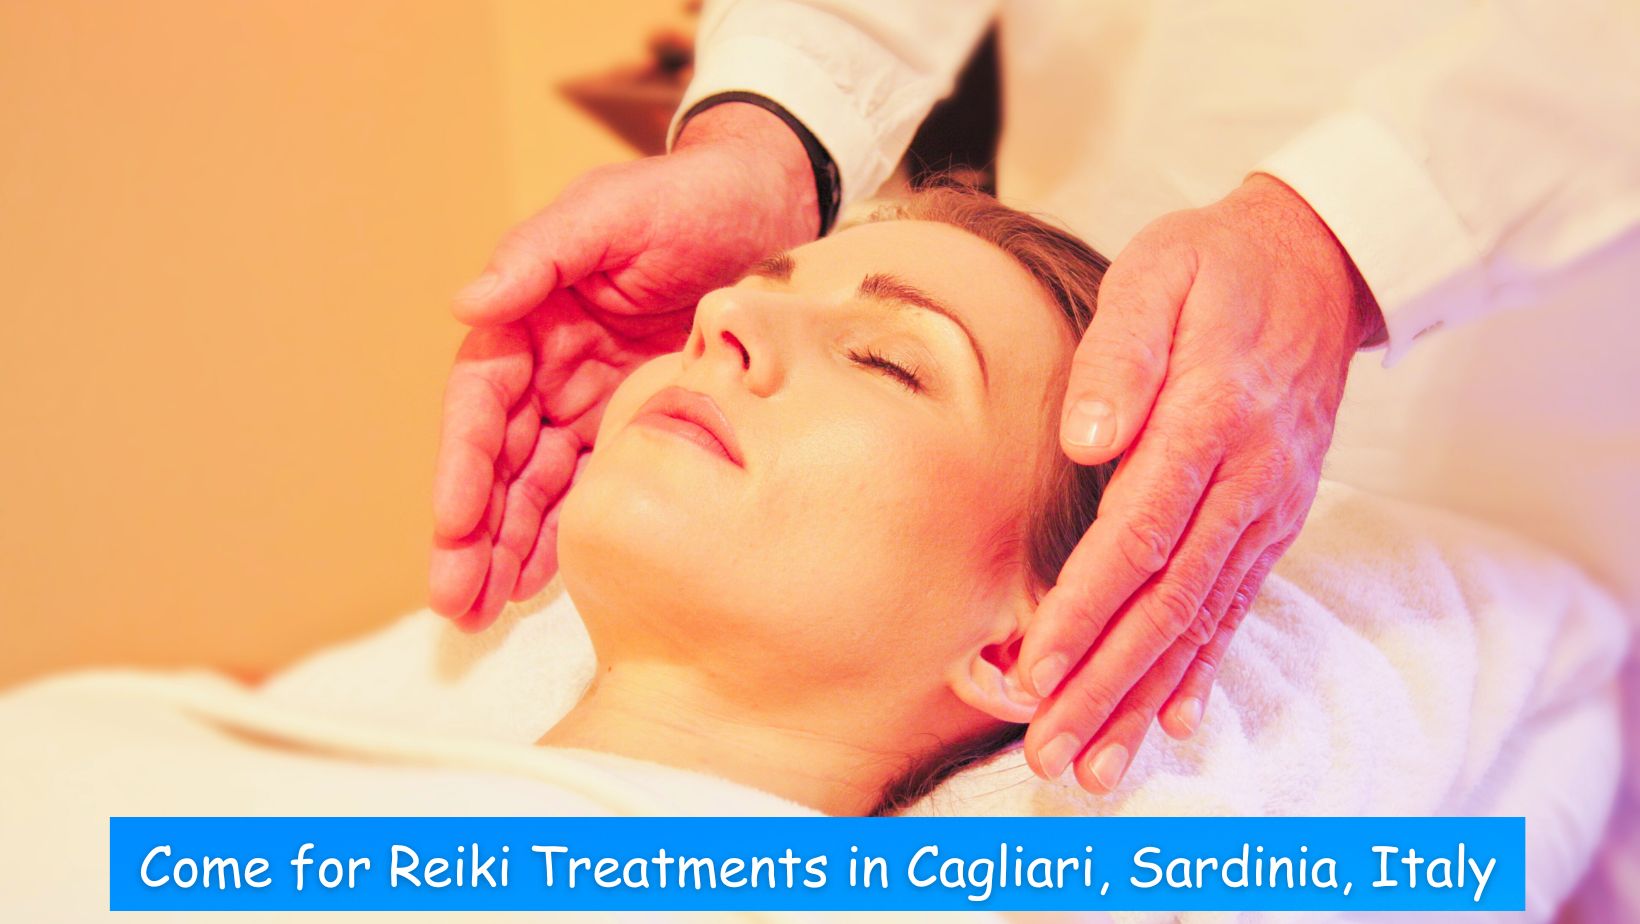 Come for Reiki treatments in Cagliari